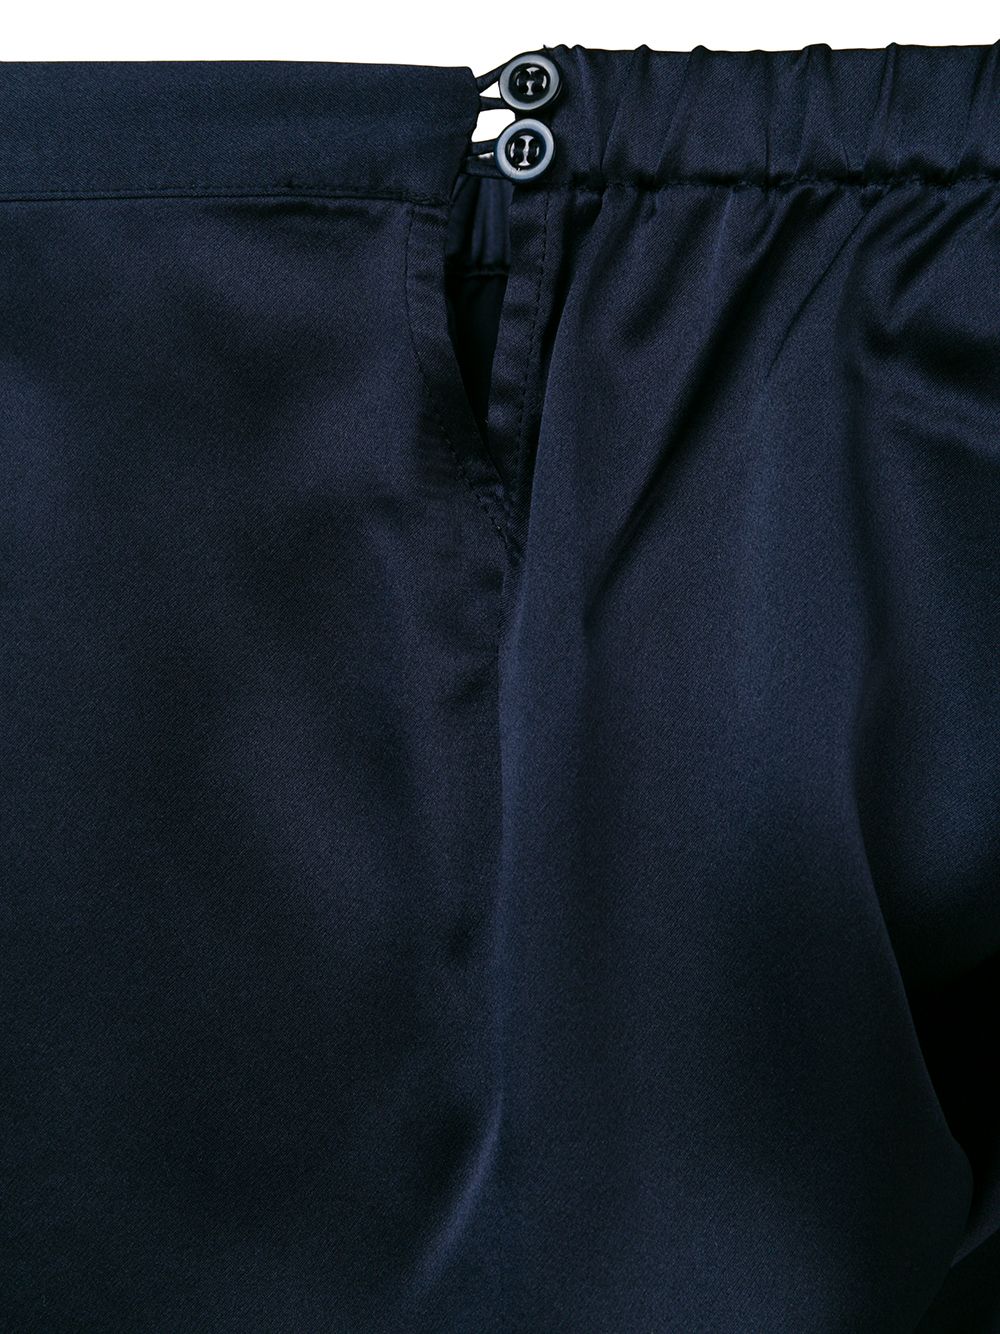 Imagen adicional 3 de producto de La Perla shorts Normie - Azul - La Perla